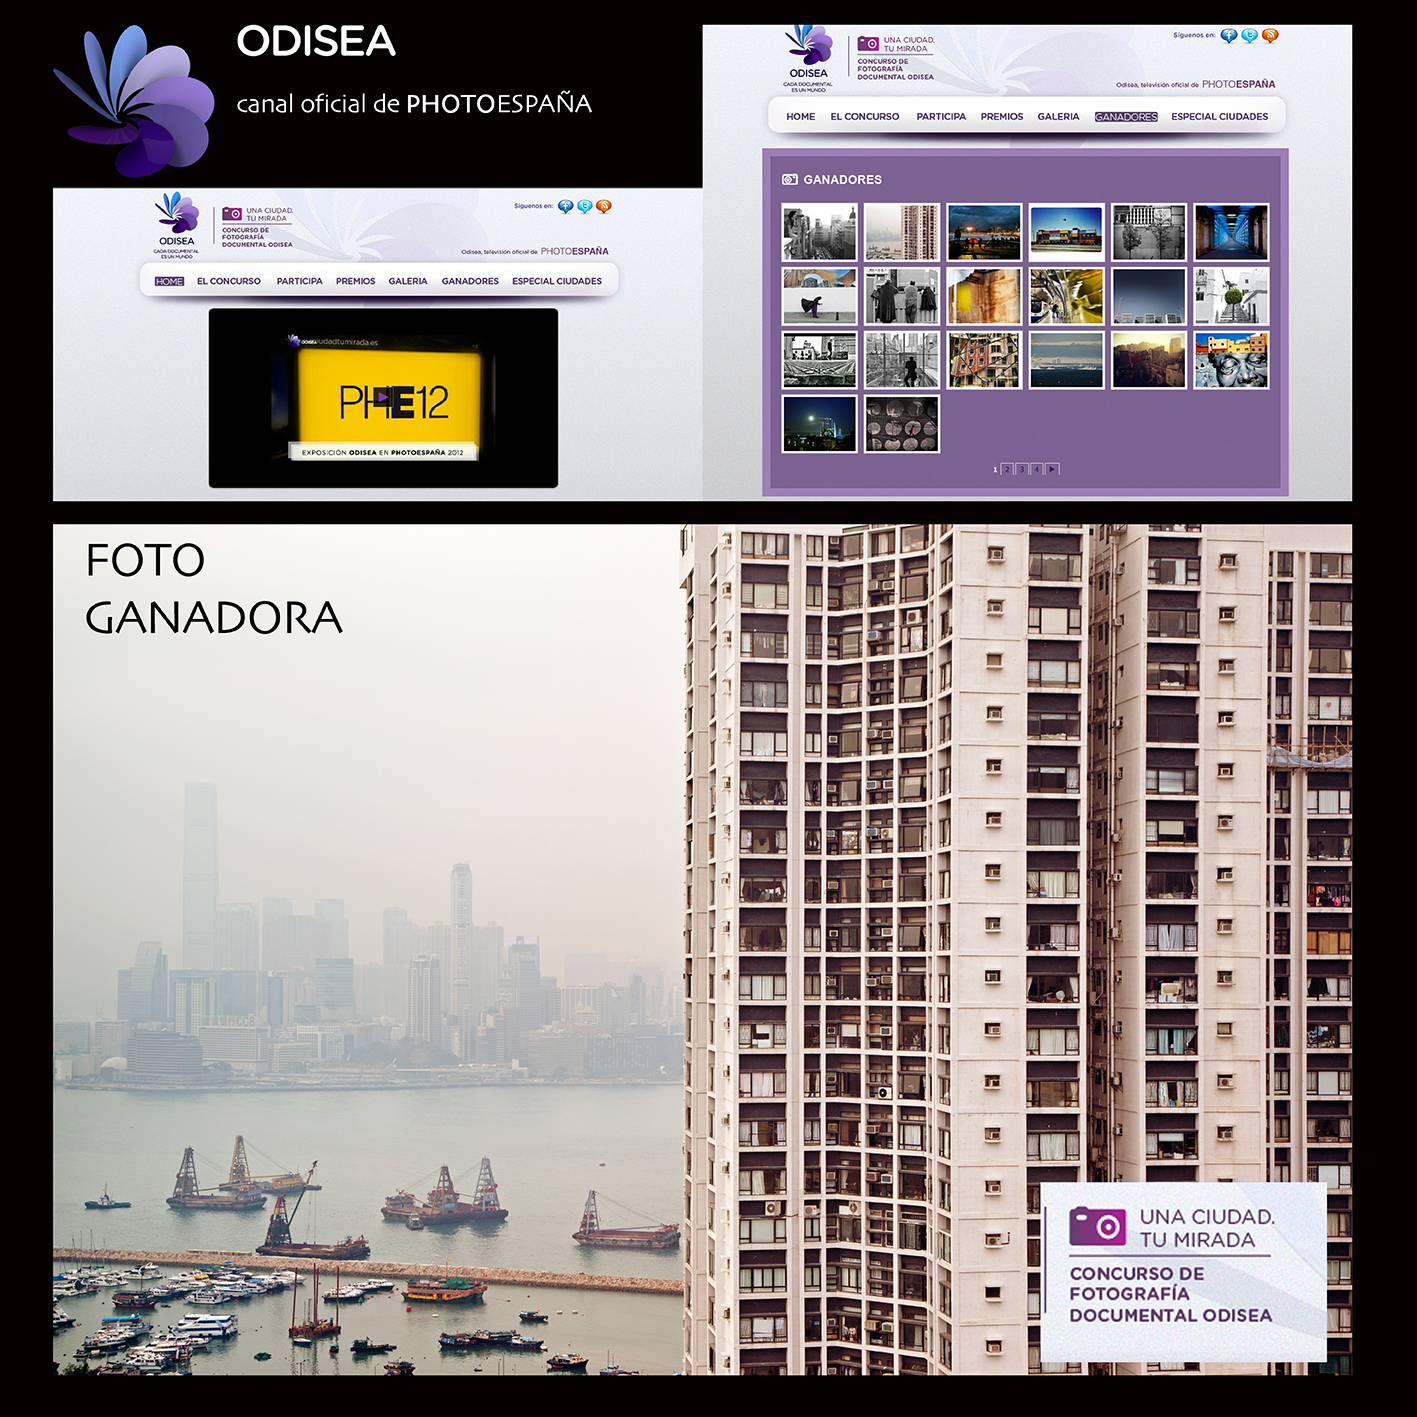 Fotografía ganadora del concurso "Una ciudad tu mirada" de Odisea en colaboración con Photoespaña 2012